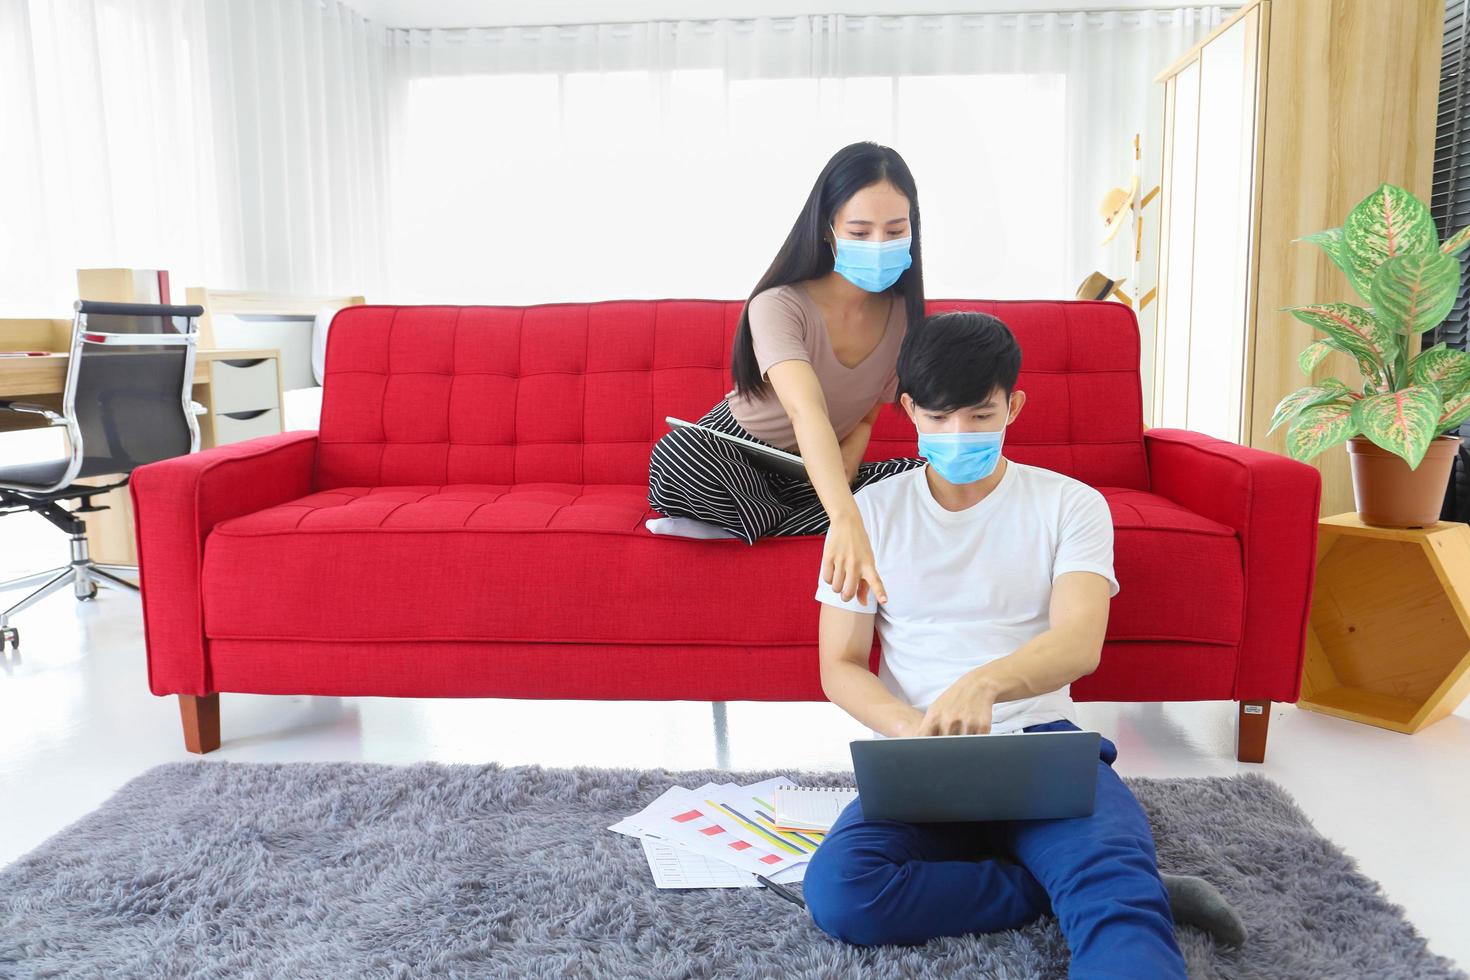 jeune couple portant un masque facial travaillant à domicile pendant la quarantaine du coronavirus ou de la pandémie de covid-19 en tant que nouvelle politique normale mise en œuvre photo